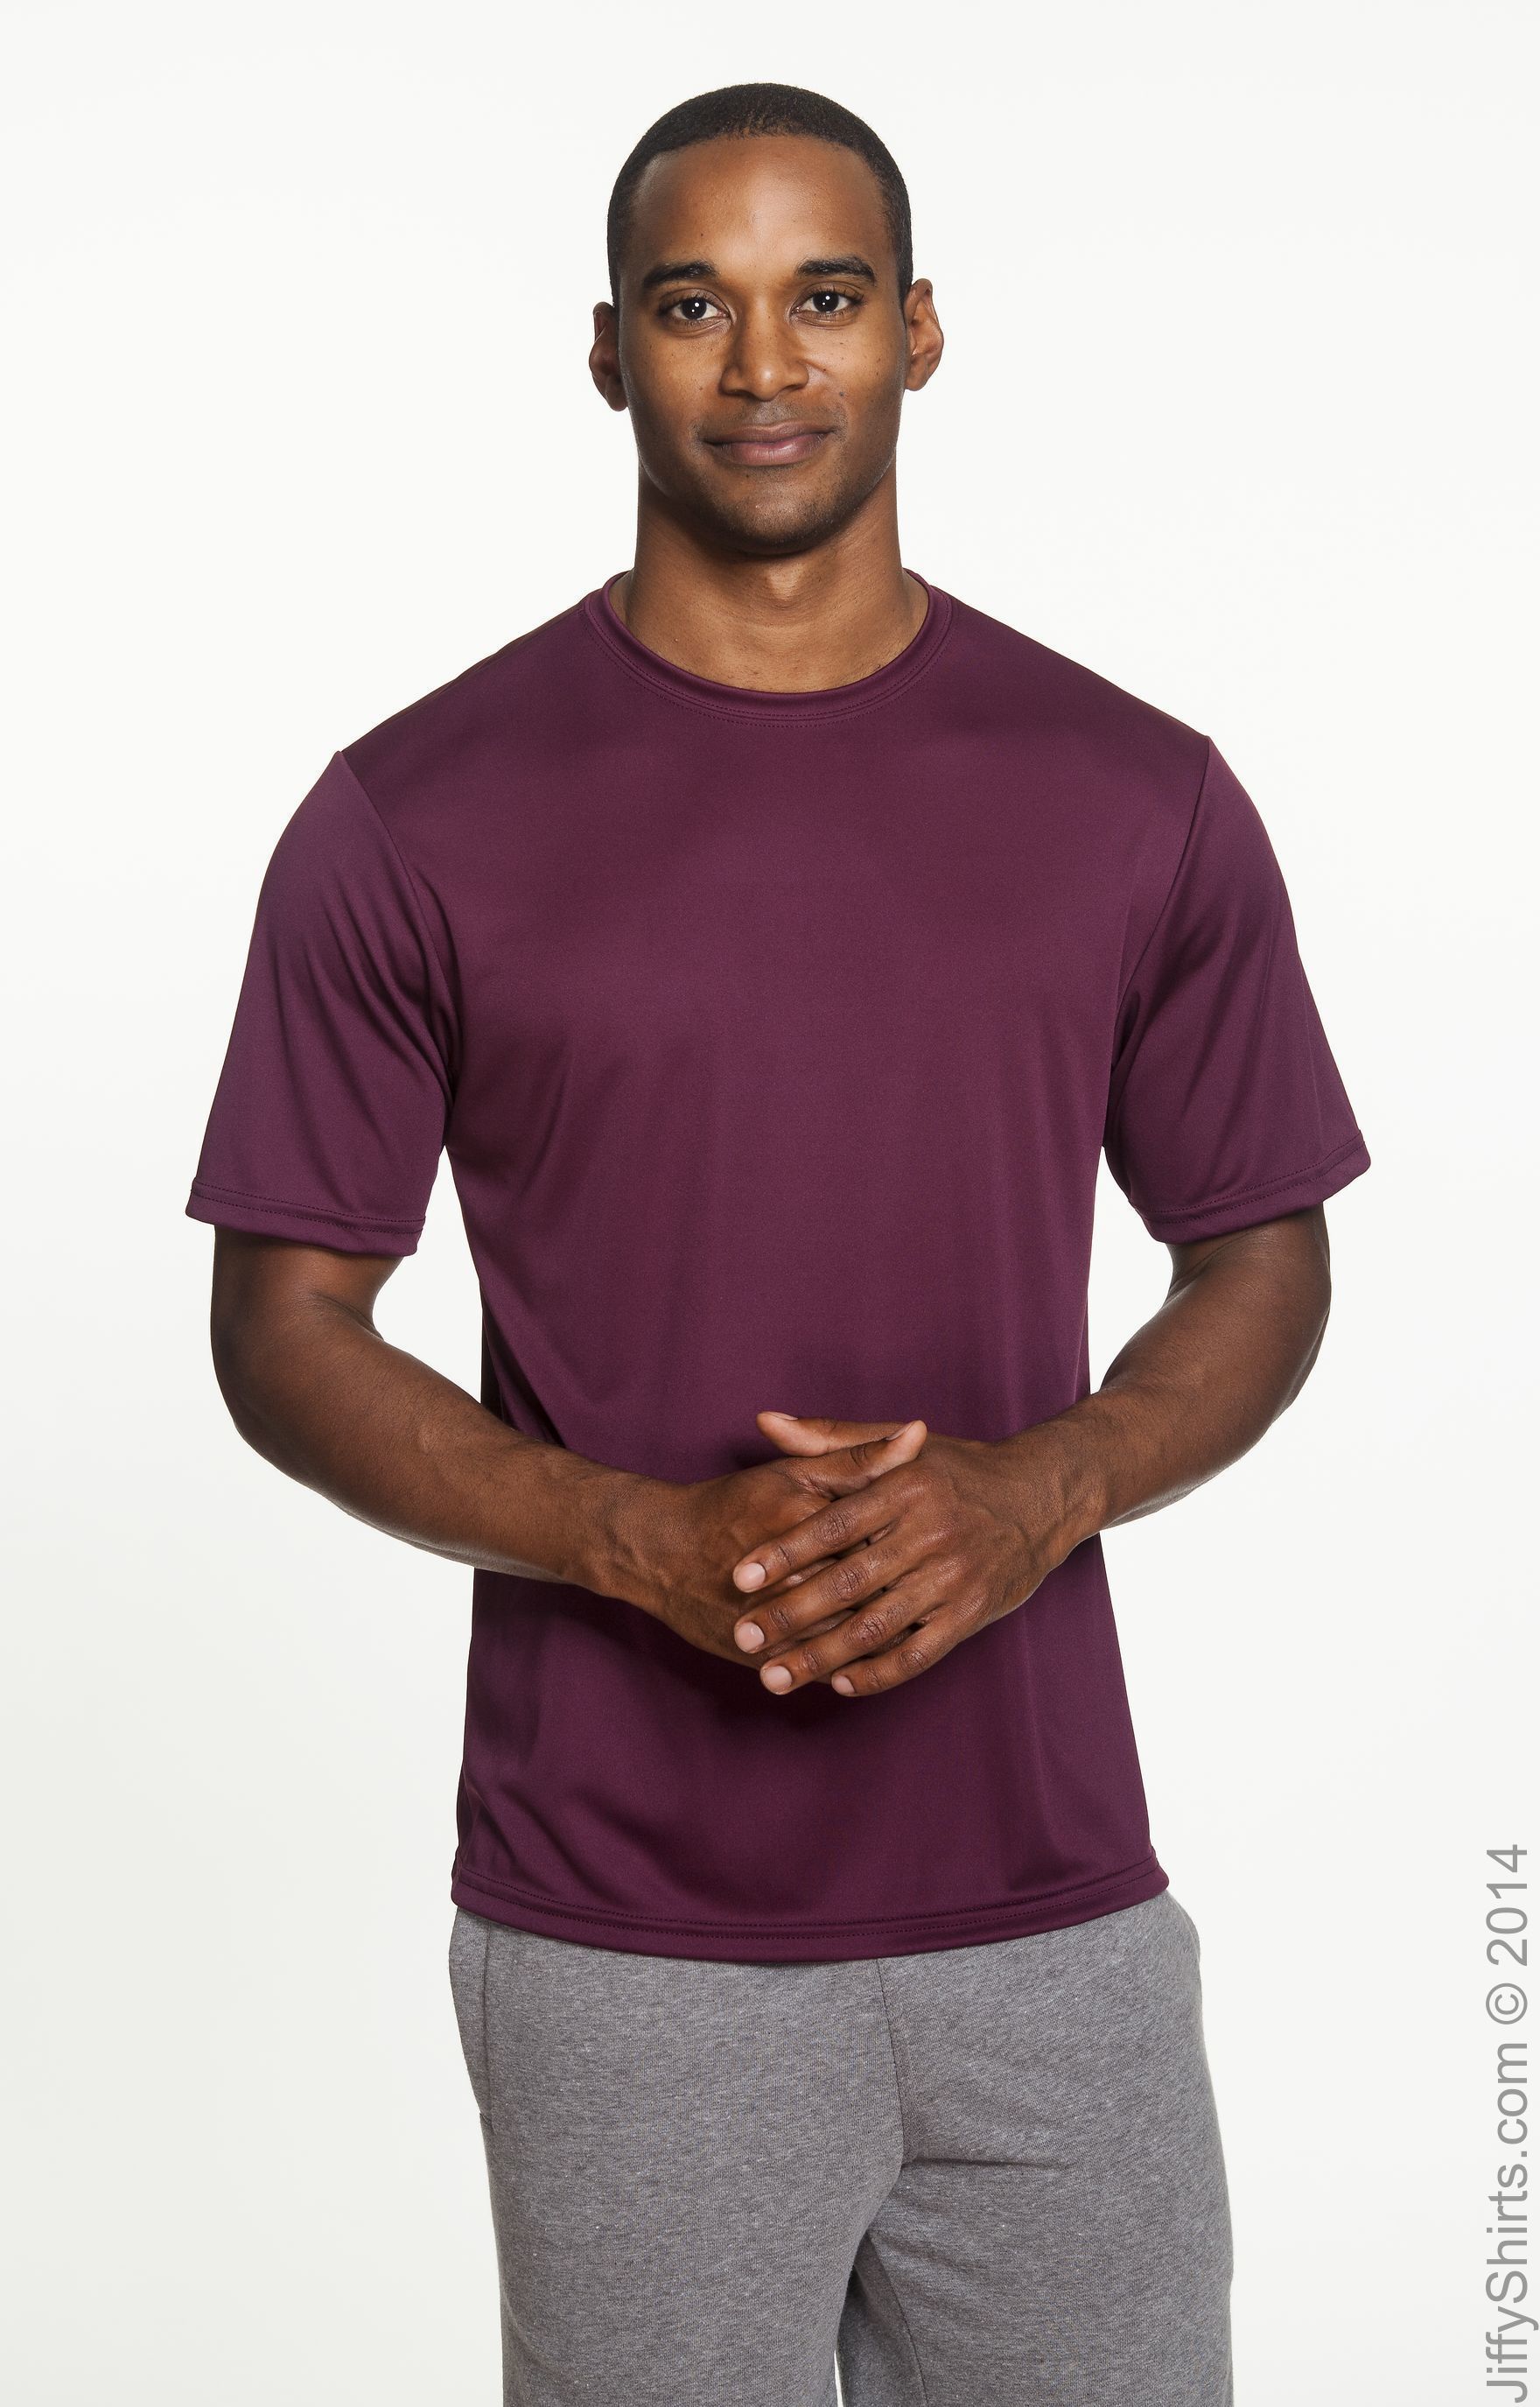 A4 N3142 Men's Cooling Performance T Shirt | Jiffy Shirts